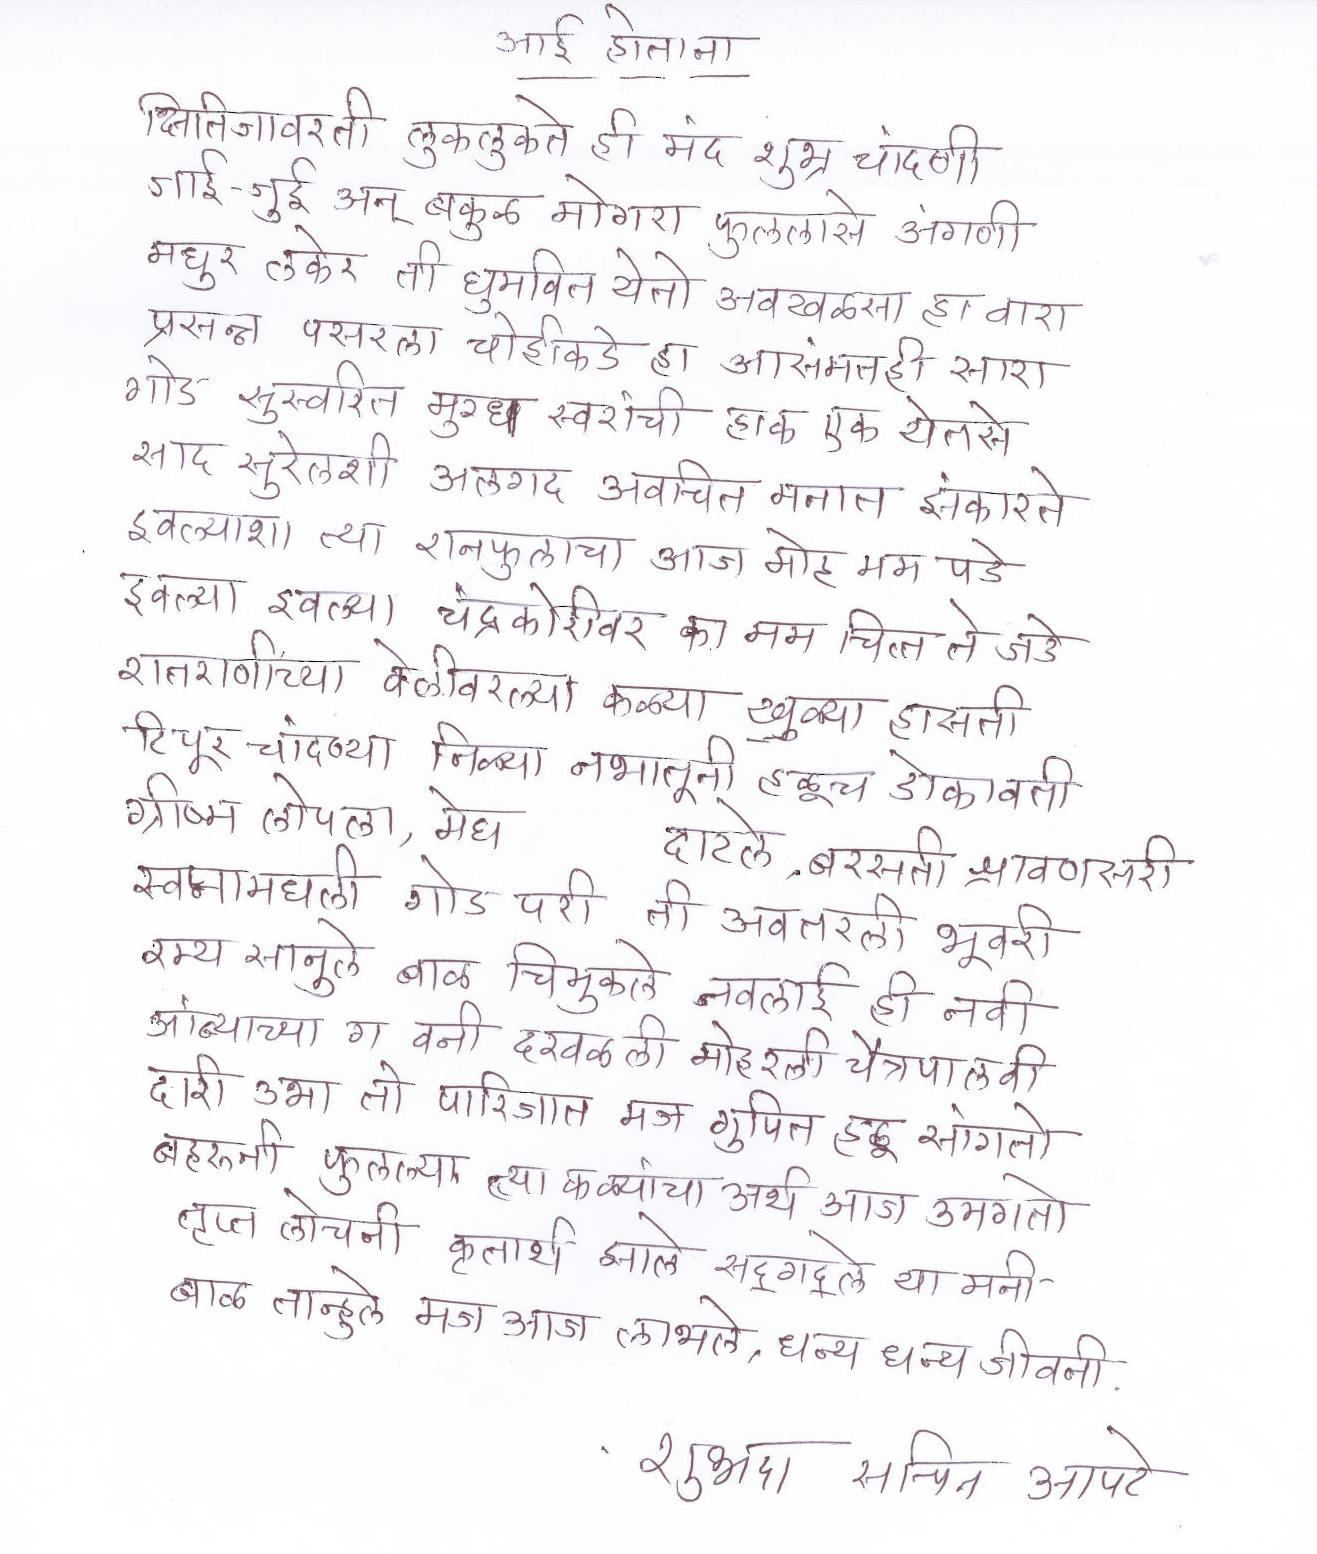 Marathi Documents List